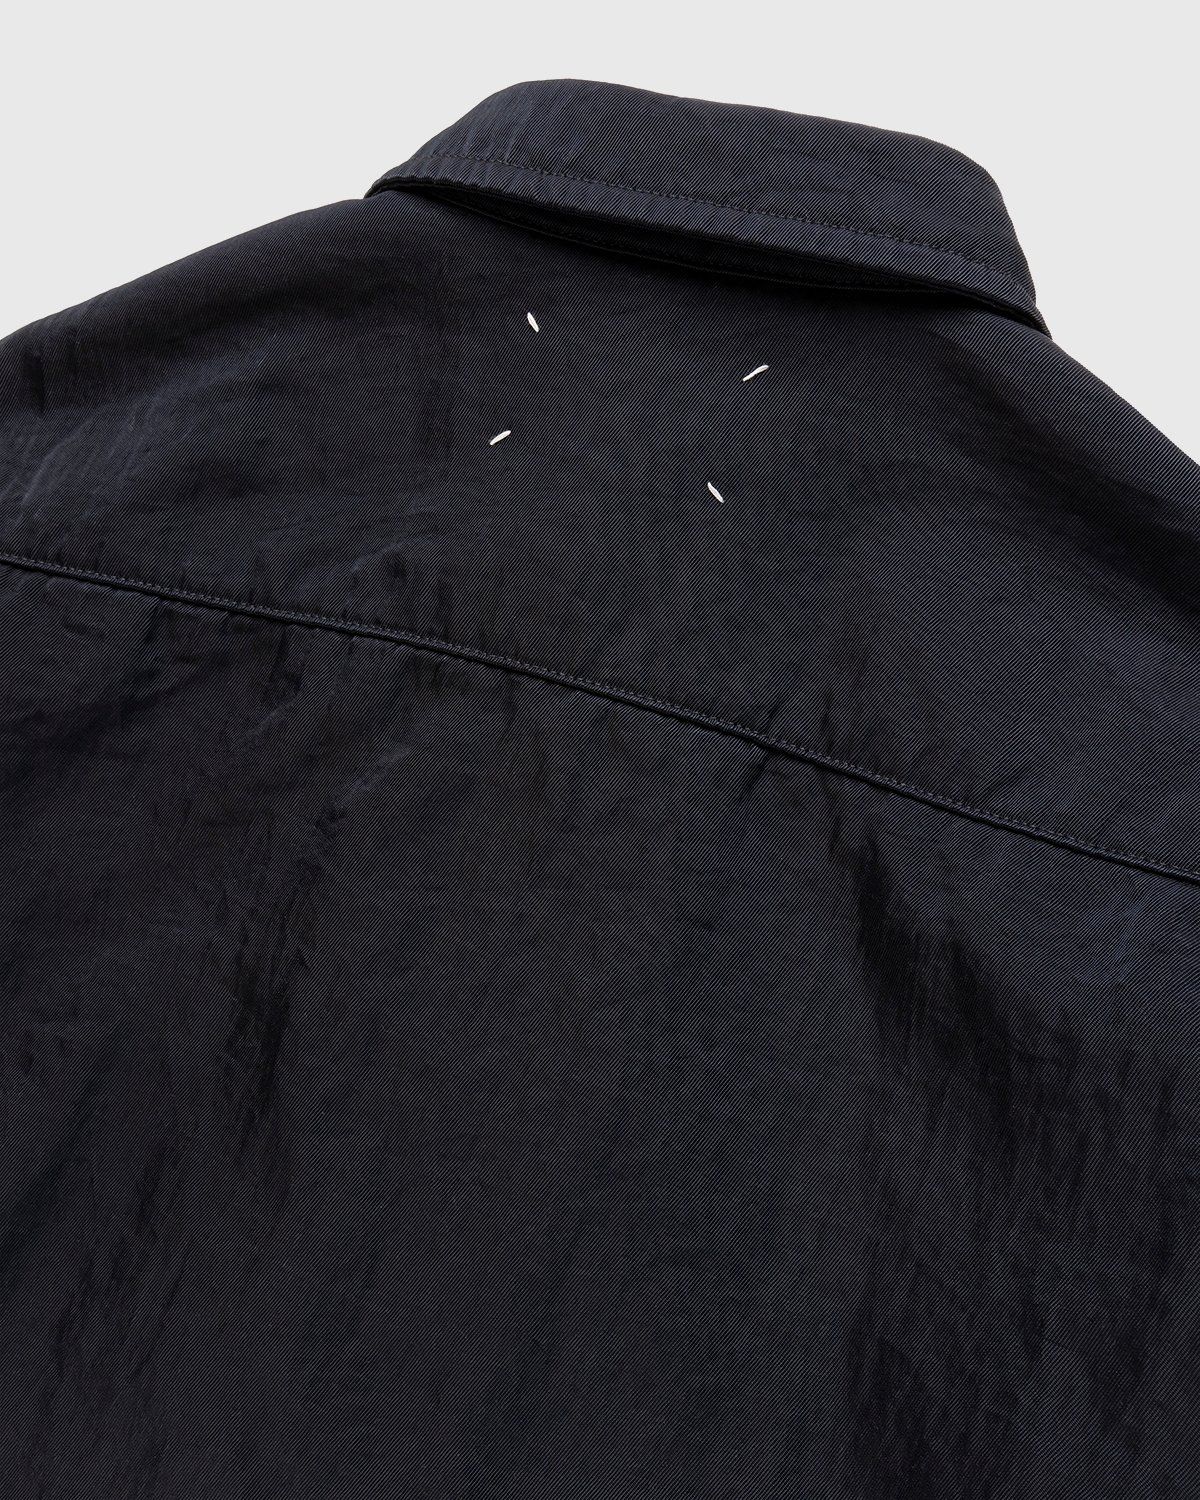 Maison Margiela – Oversized Nylon Jacket Navy - Shirts - Black - Image 3